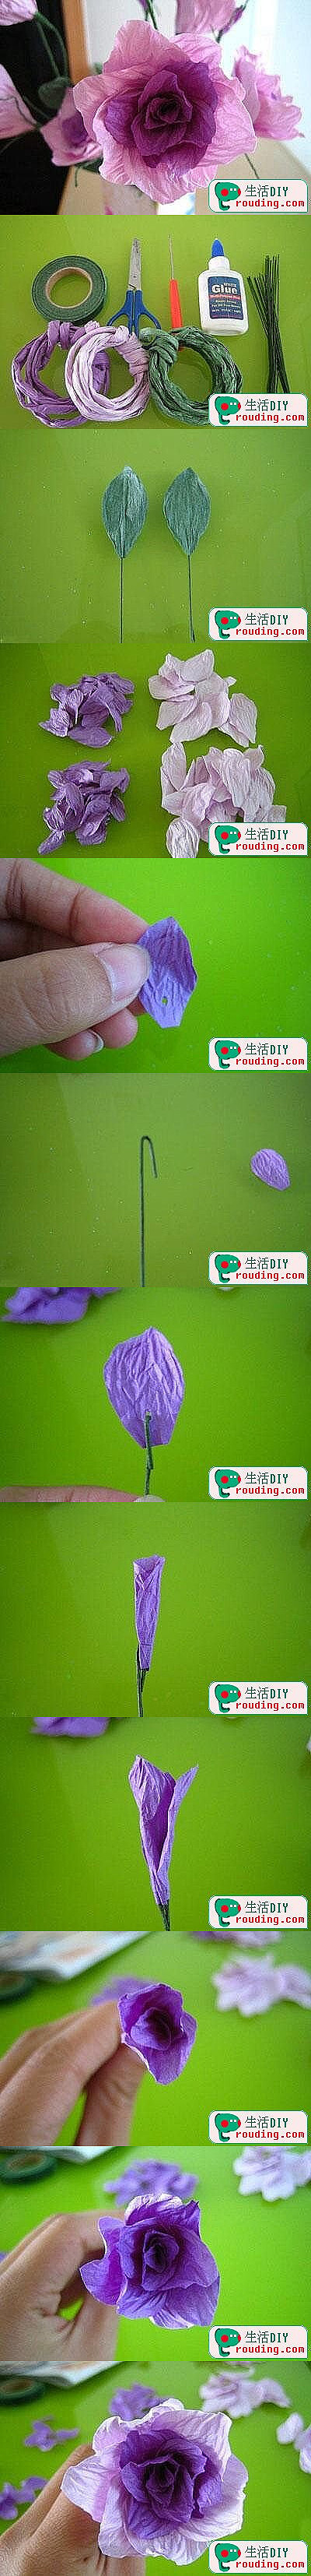 折纸 布艺 手工DIY 教程 衍纸 茱萸花的做法